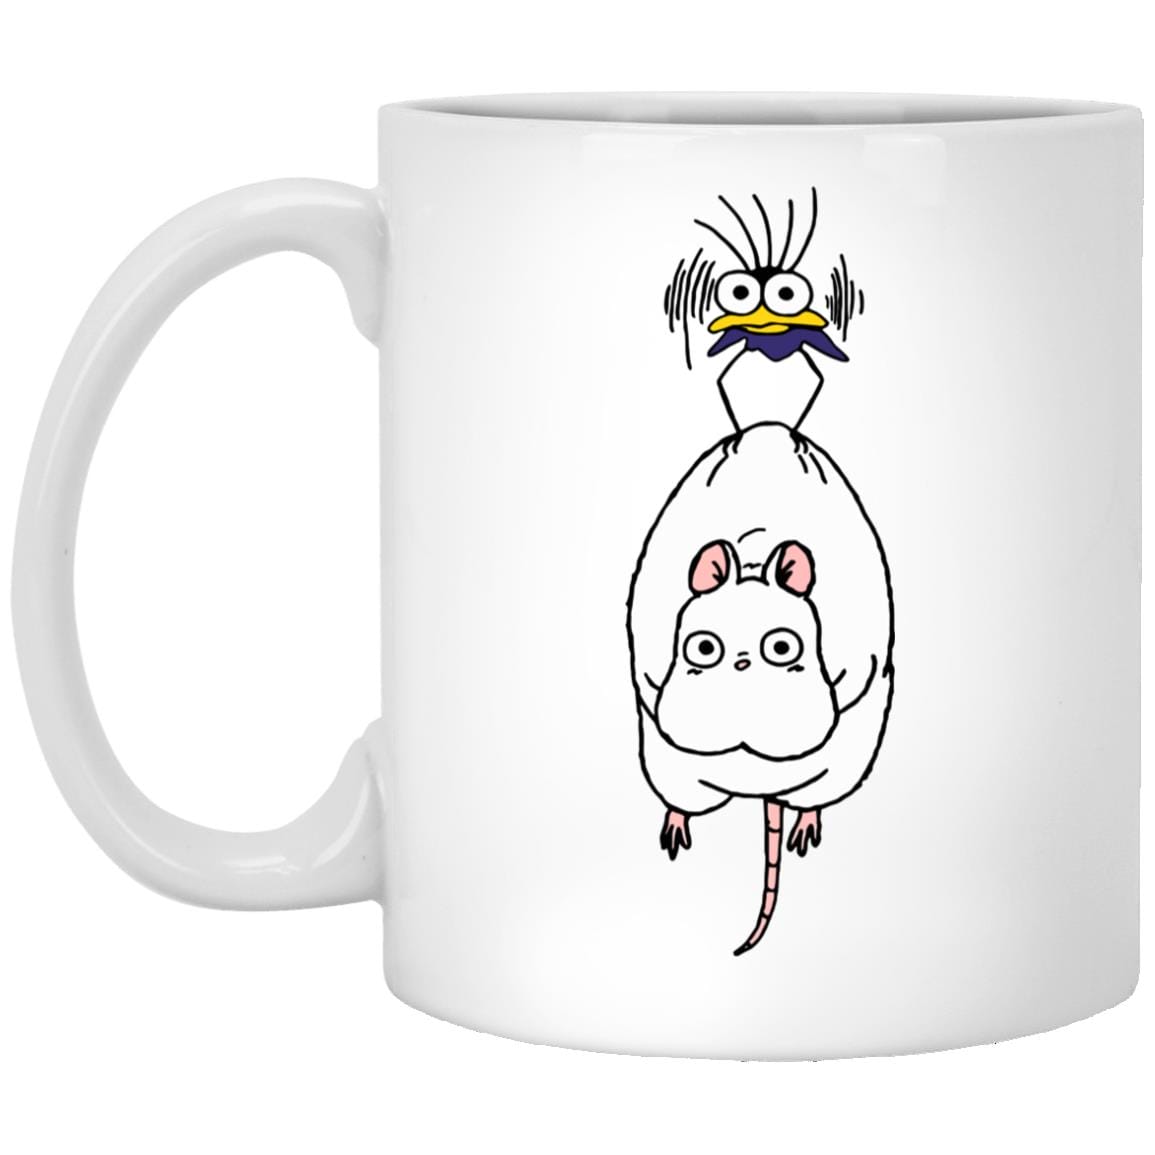 Spirited Away – Boh Mouse Mug